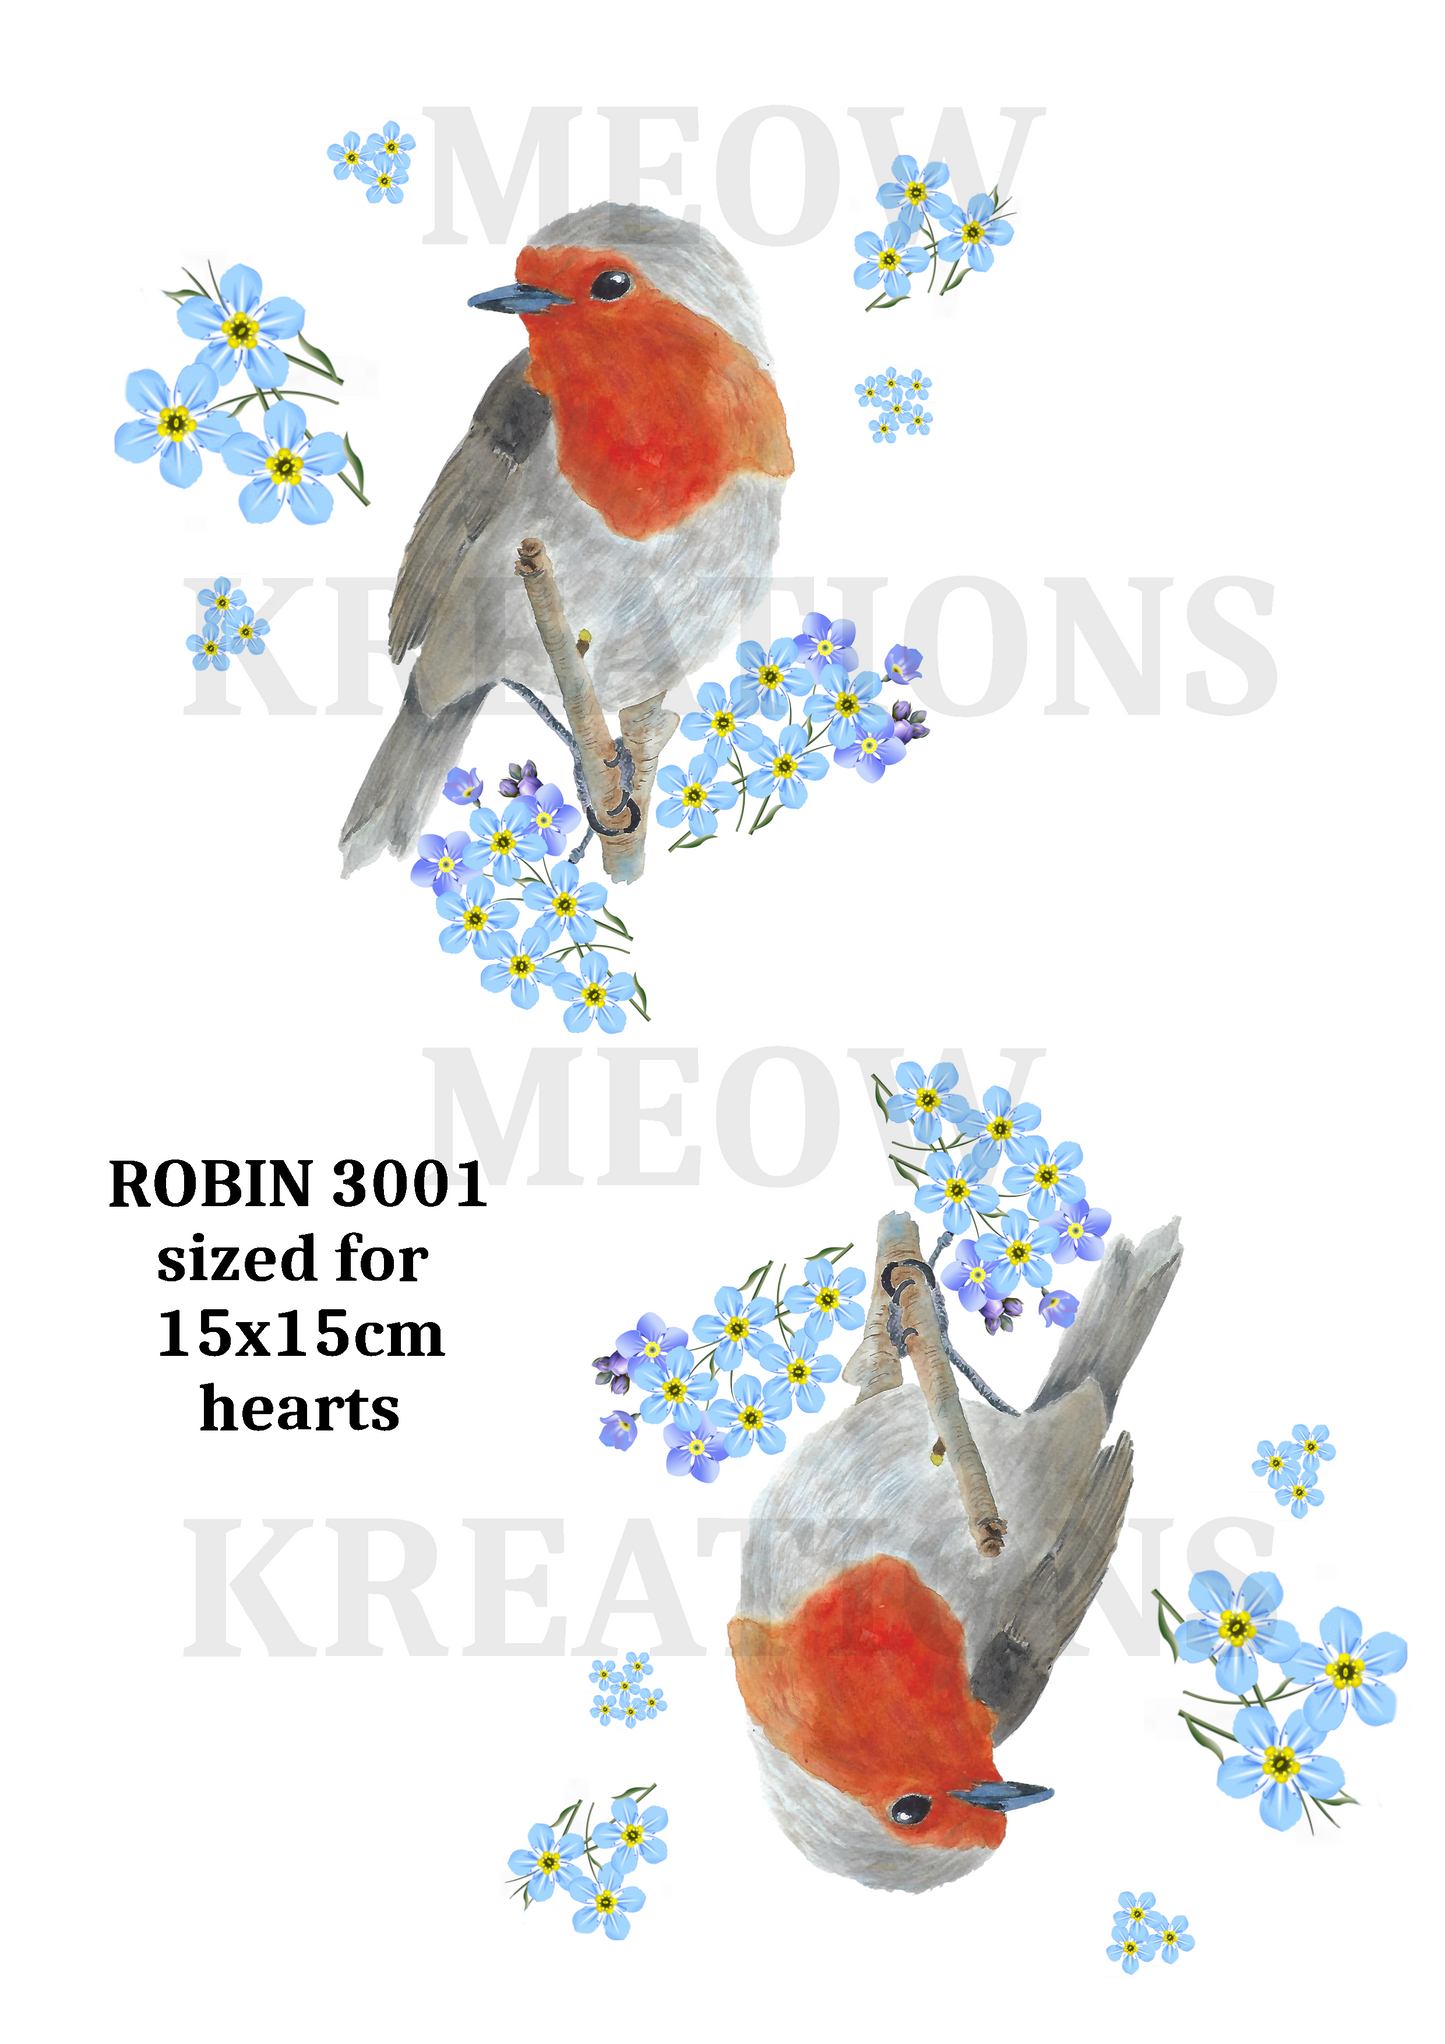 ROBIN 3001